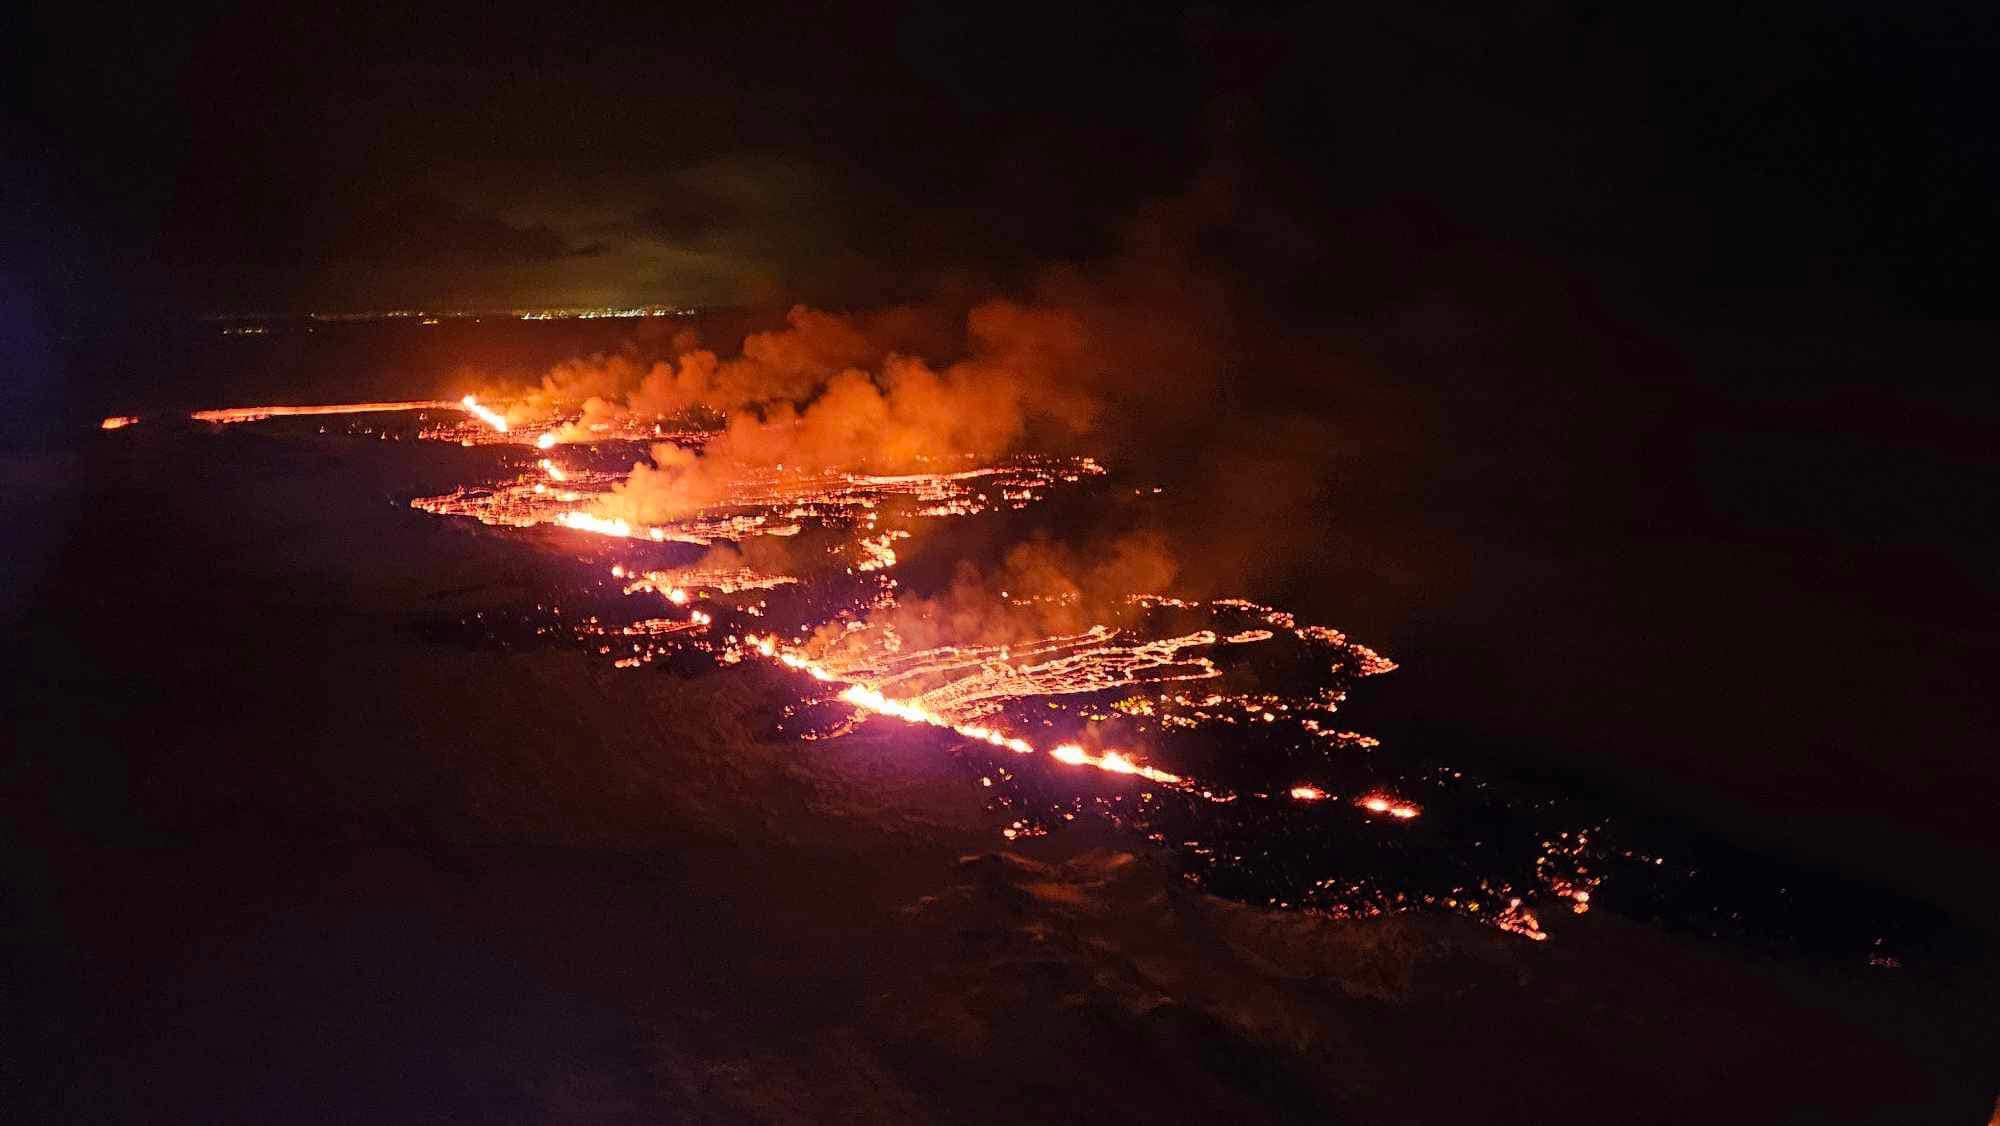 İzlanda Meteoroloji Ofisinin (IMO) açıklamasına göre, Reykjanes Yarımadası'ndaki yanardağ patlaması, Grindavik kasabasının yakınlarında gerçekleşti. 